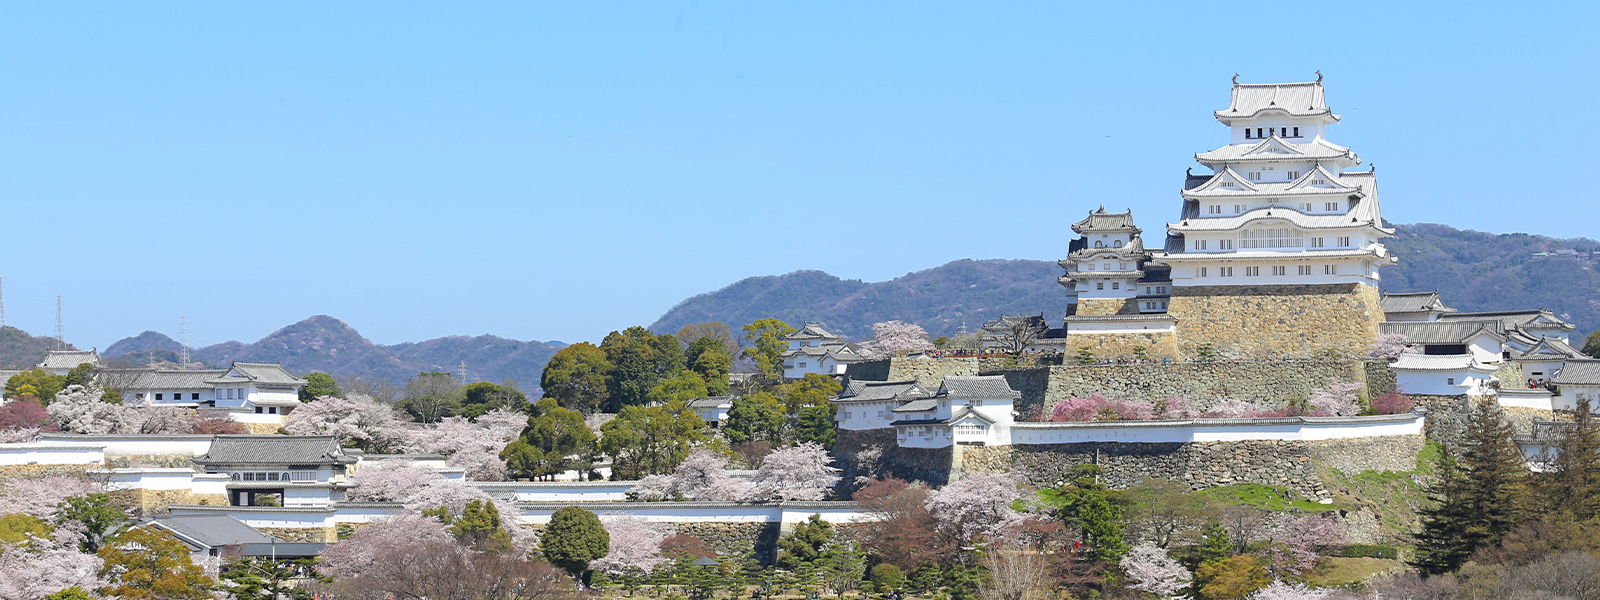 姫路城の風景